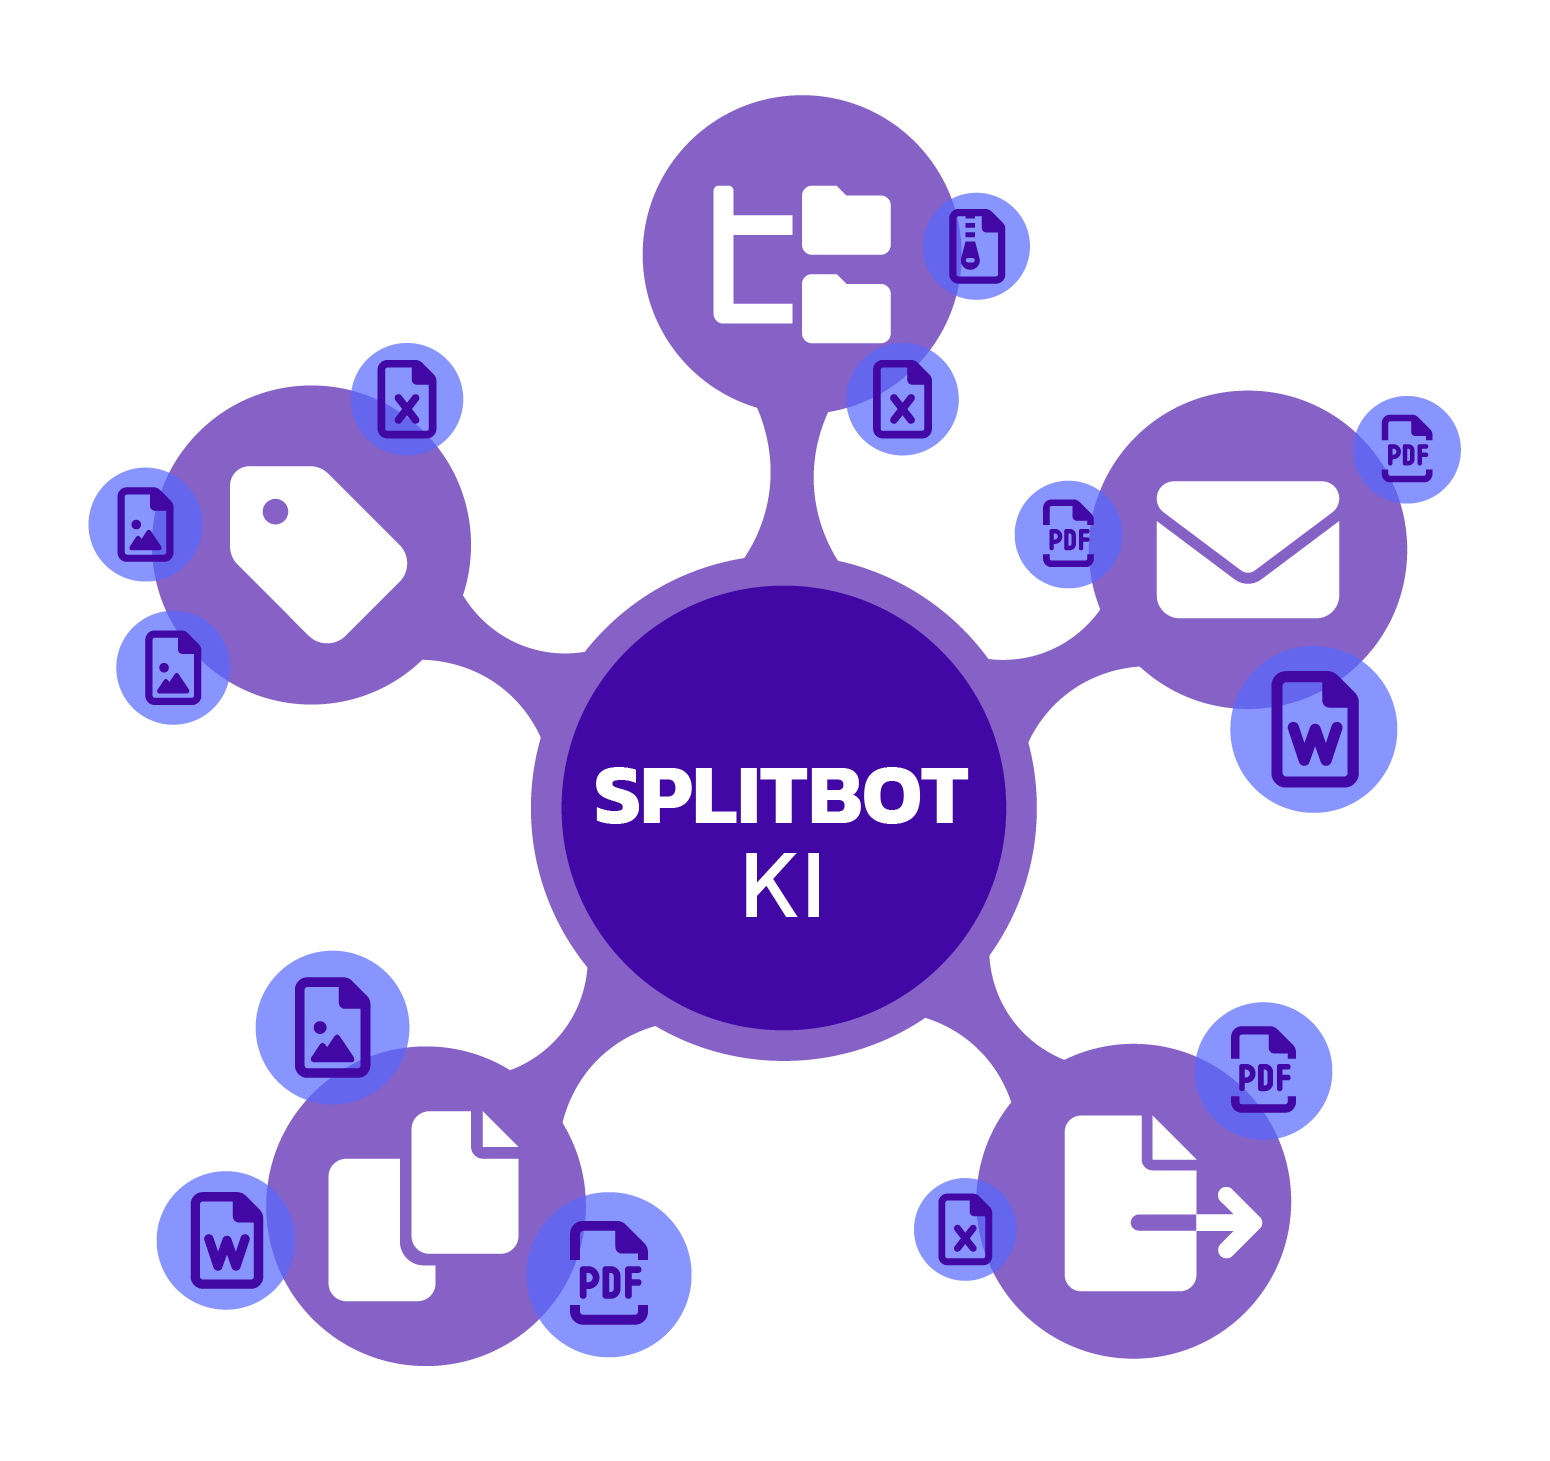 Splitbot